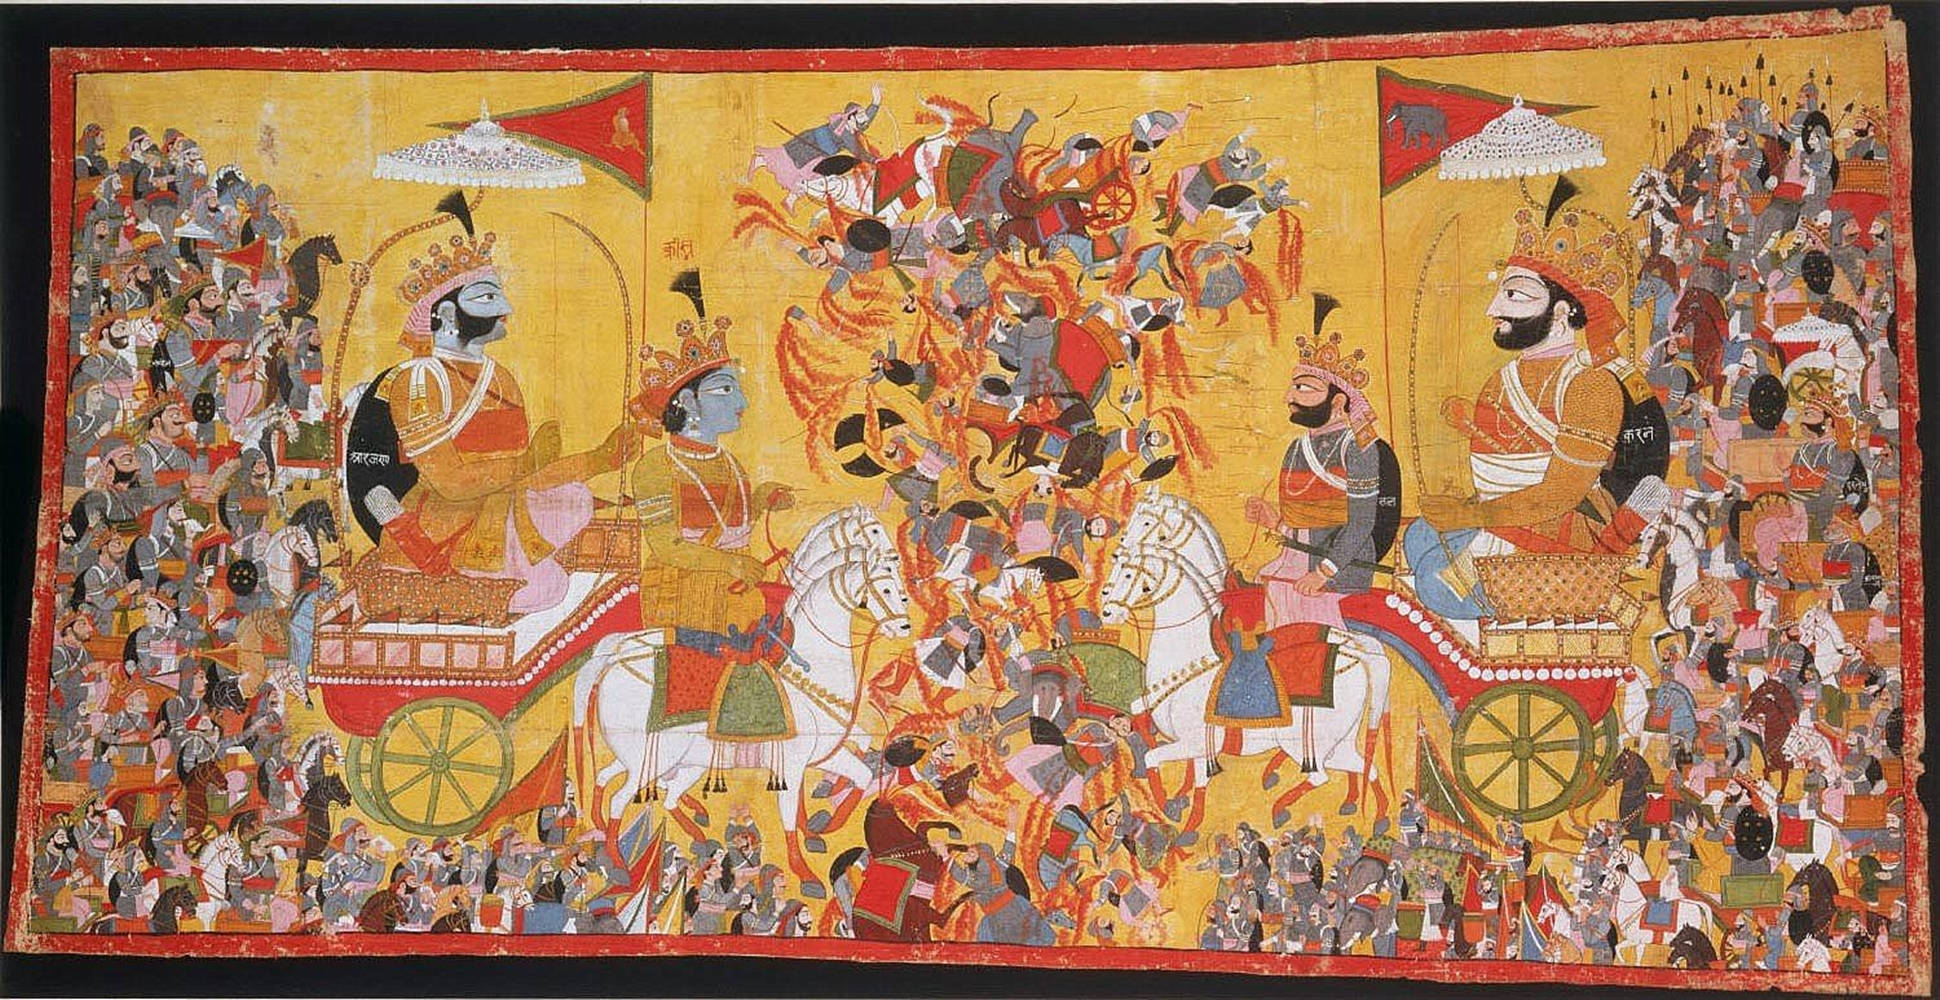 Afbildning af Kurukshetra krig rullet tapet af Krishna Arjun Wallpaper